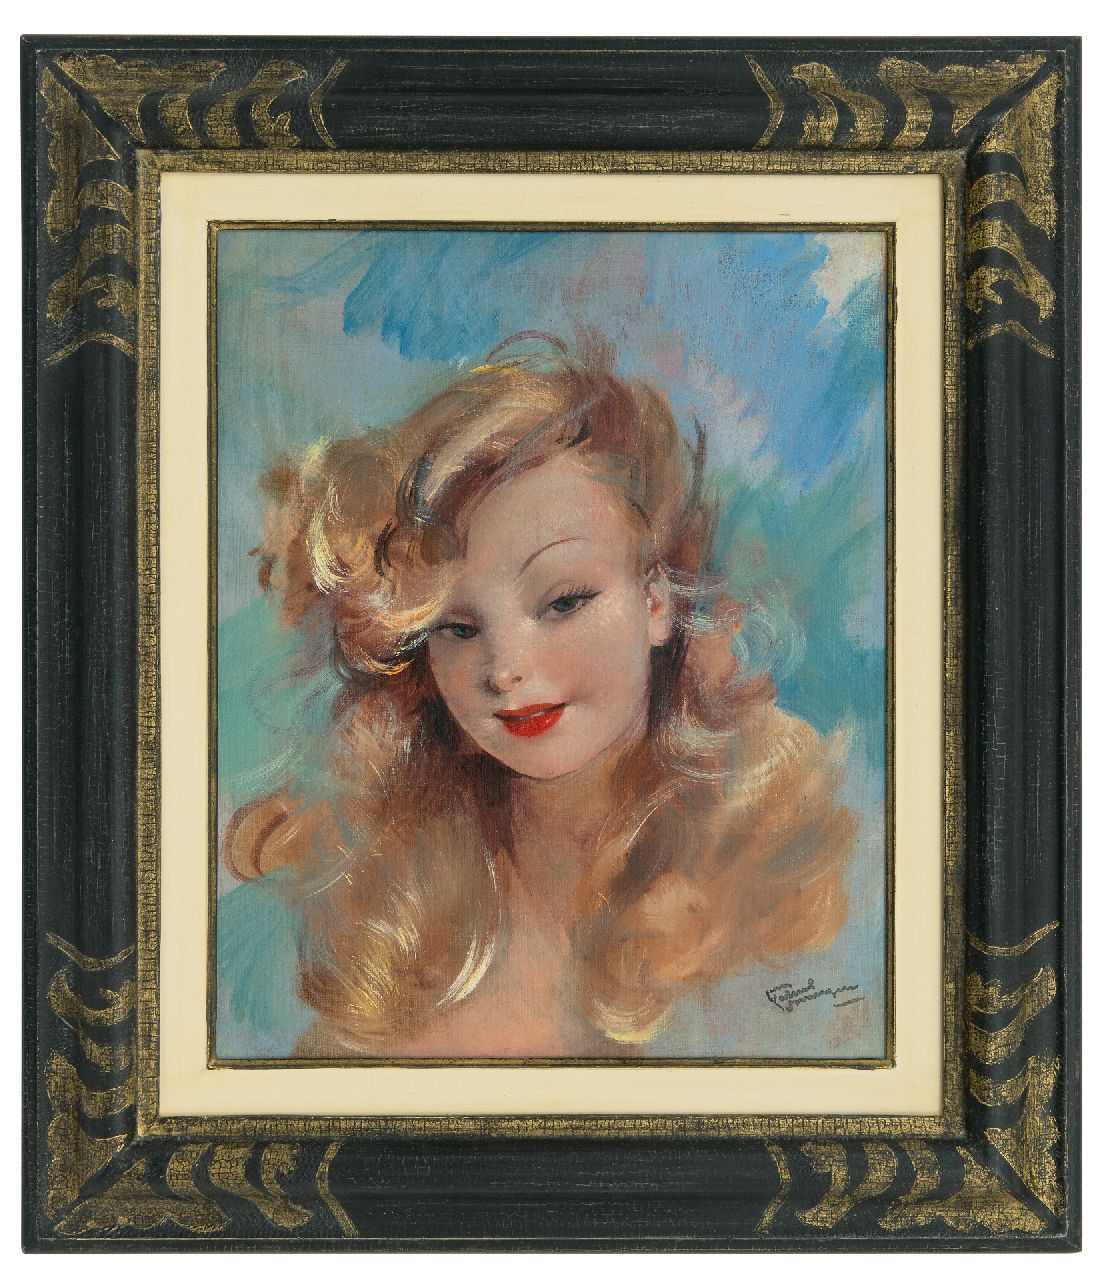 Domergue J.G.  | Jean-Gabriel Domergue | Schilderijen te koop aangeboden | Portrait de Mademoiselle Marisia, olieverf op doek 41,0 x 33,0 cm, gesigneerd rechtsonder